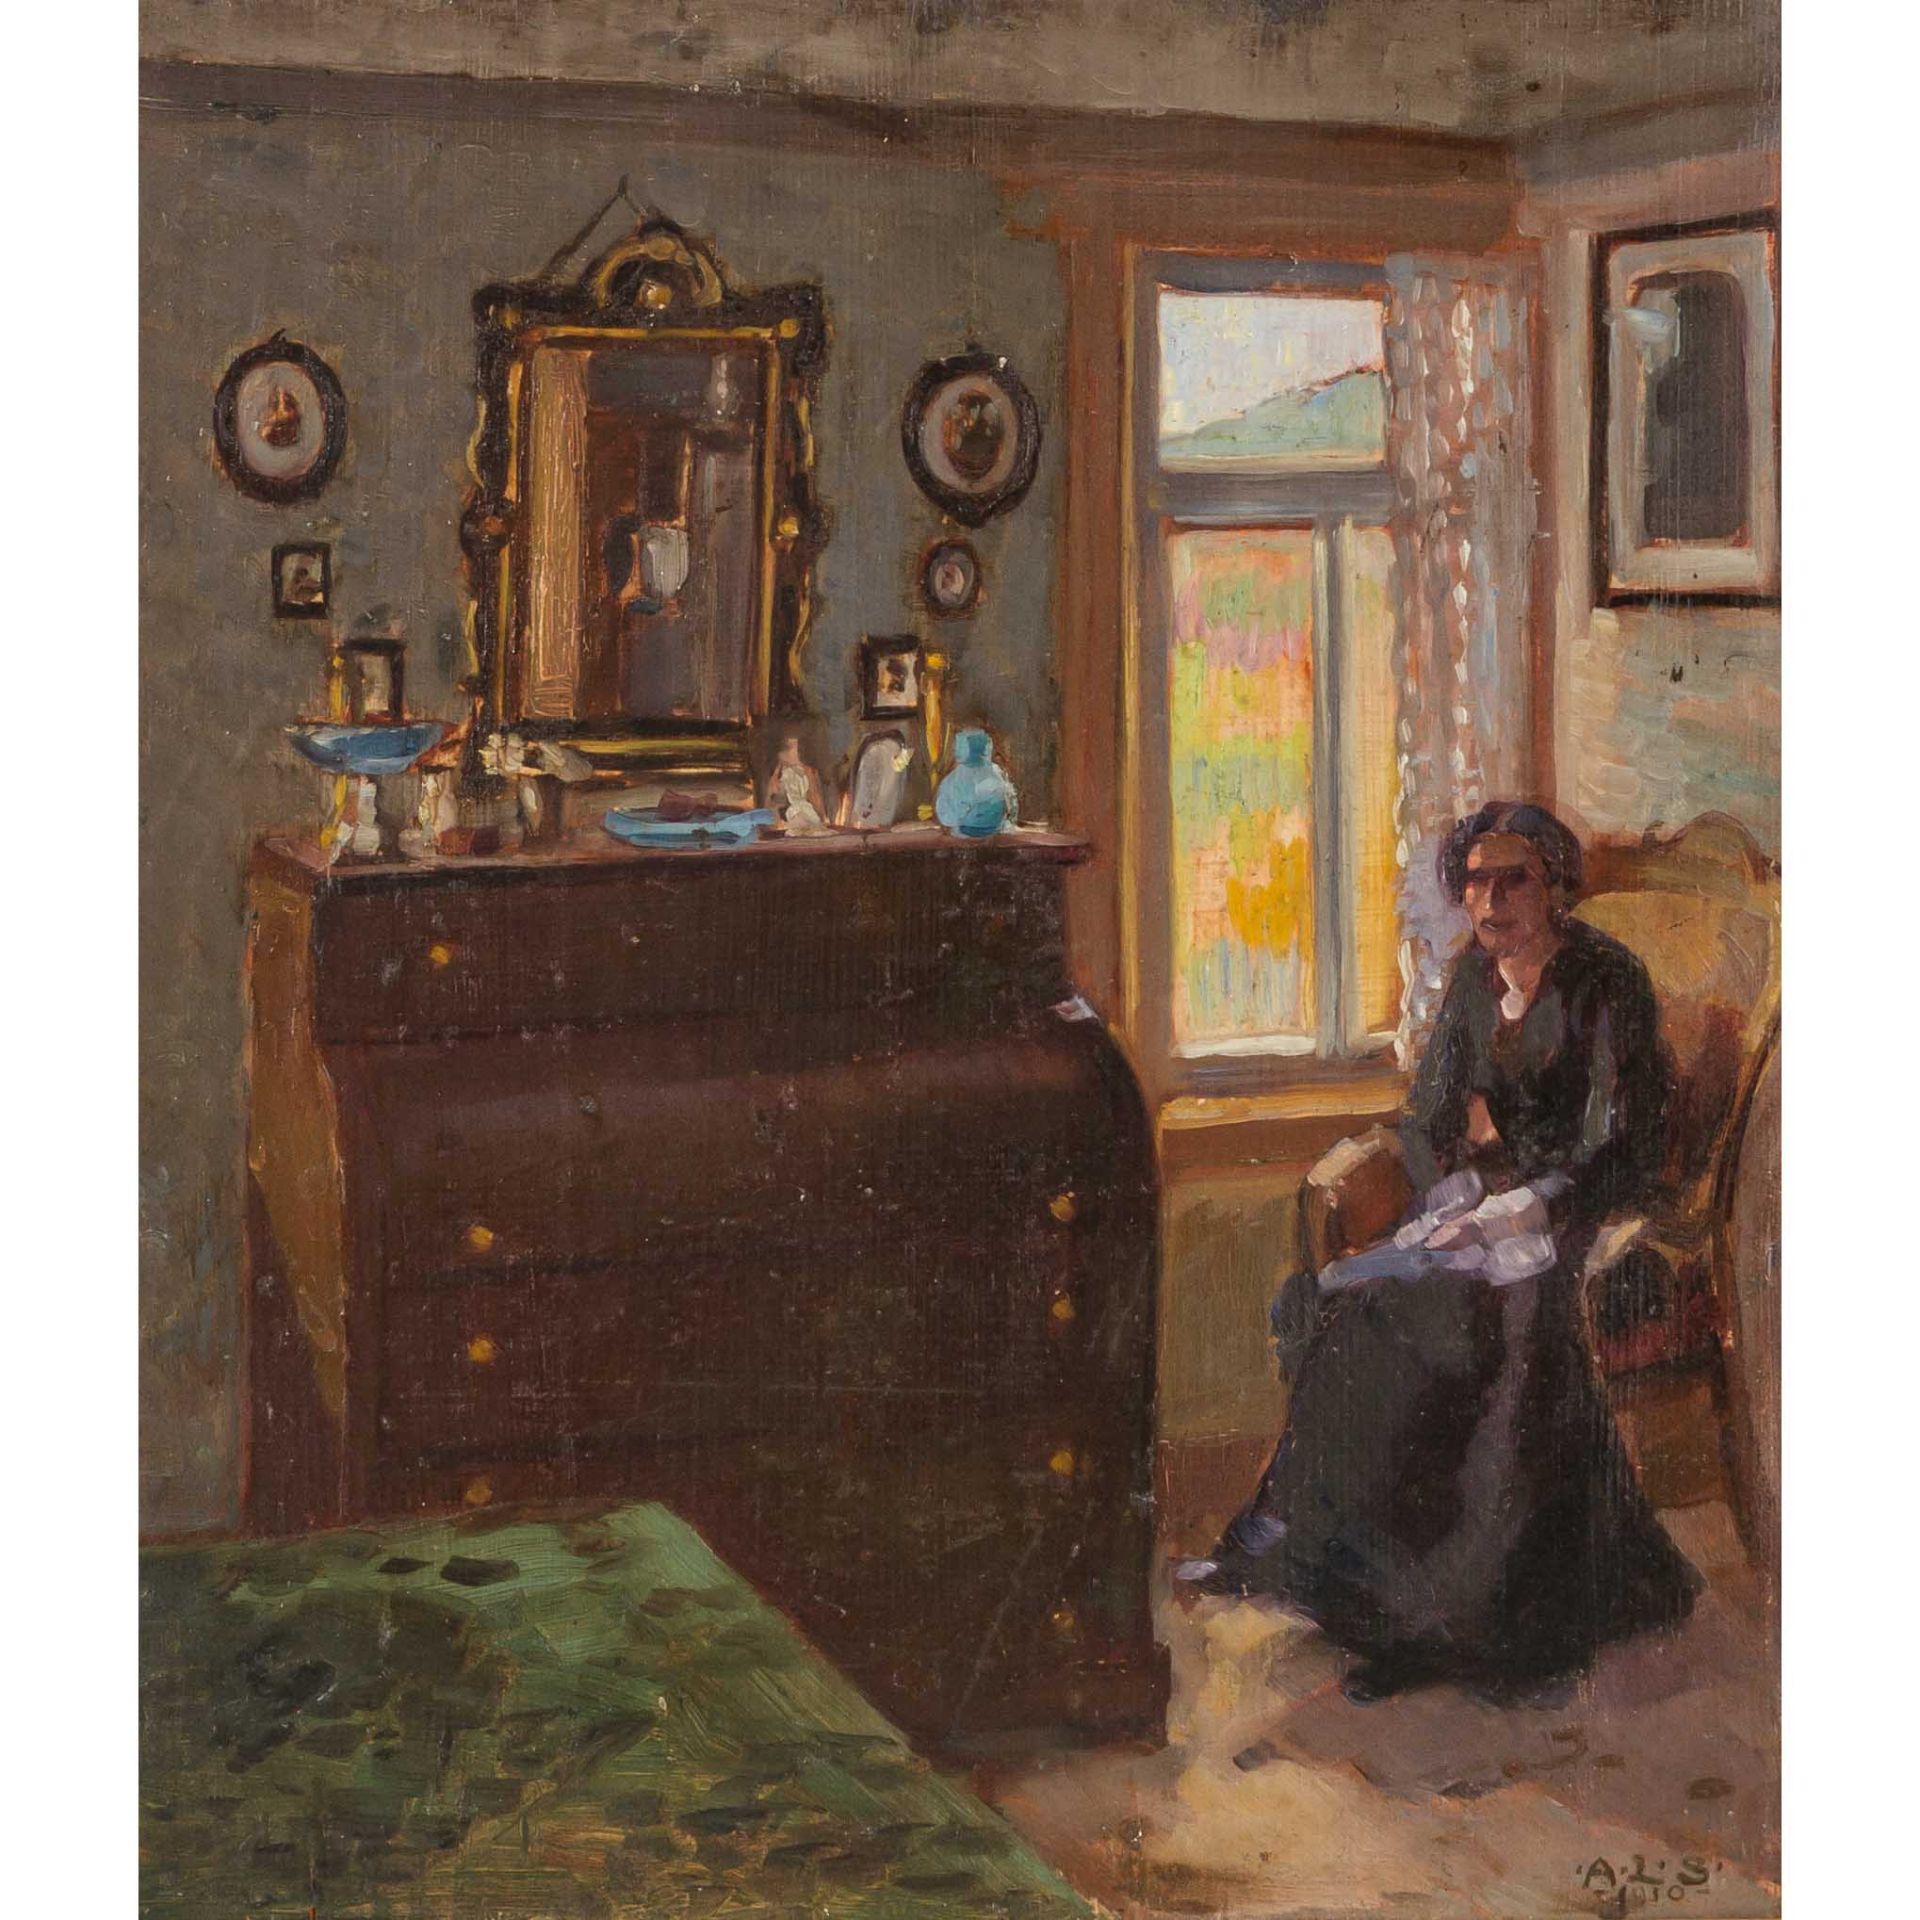 SCHMITT, AUGUST LUDWIG (1882-1936), "Dame im Interieur",